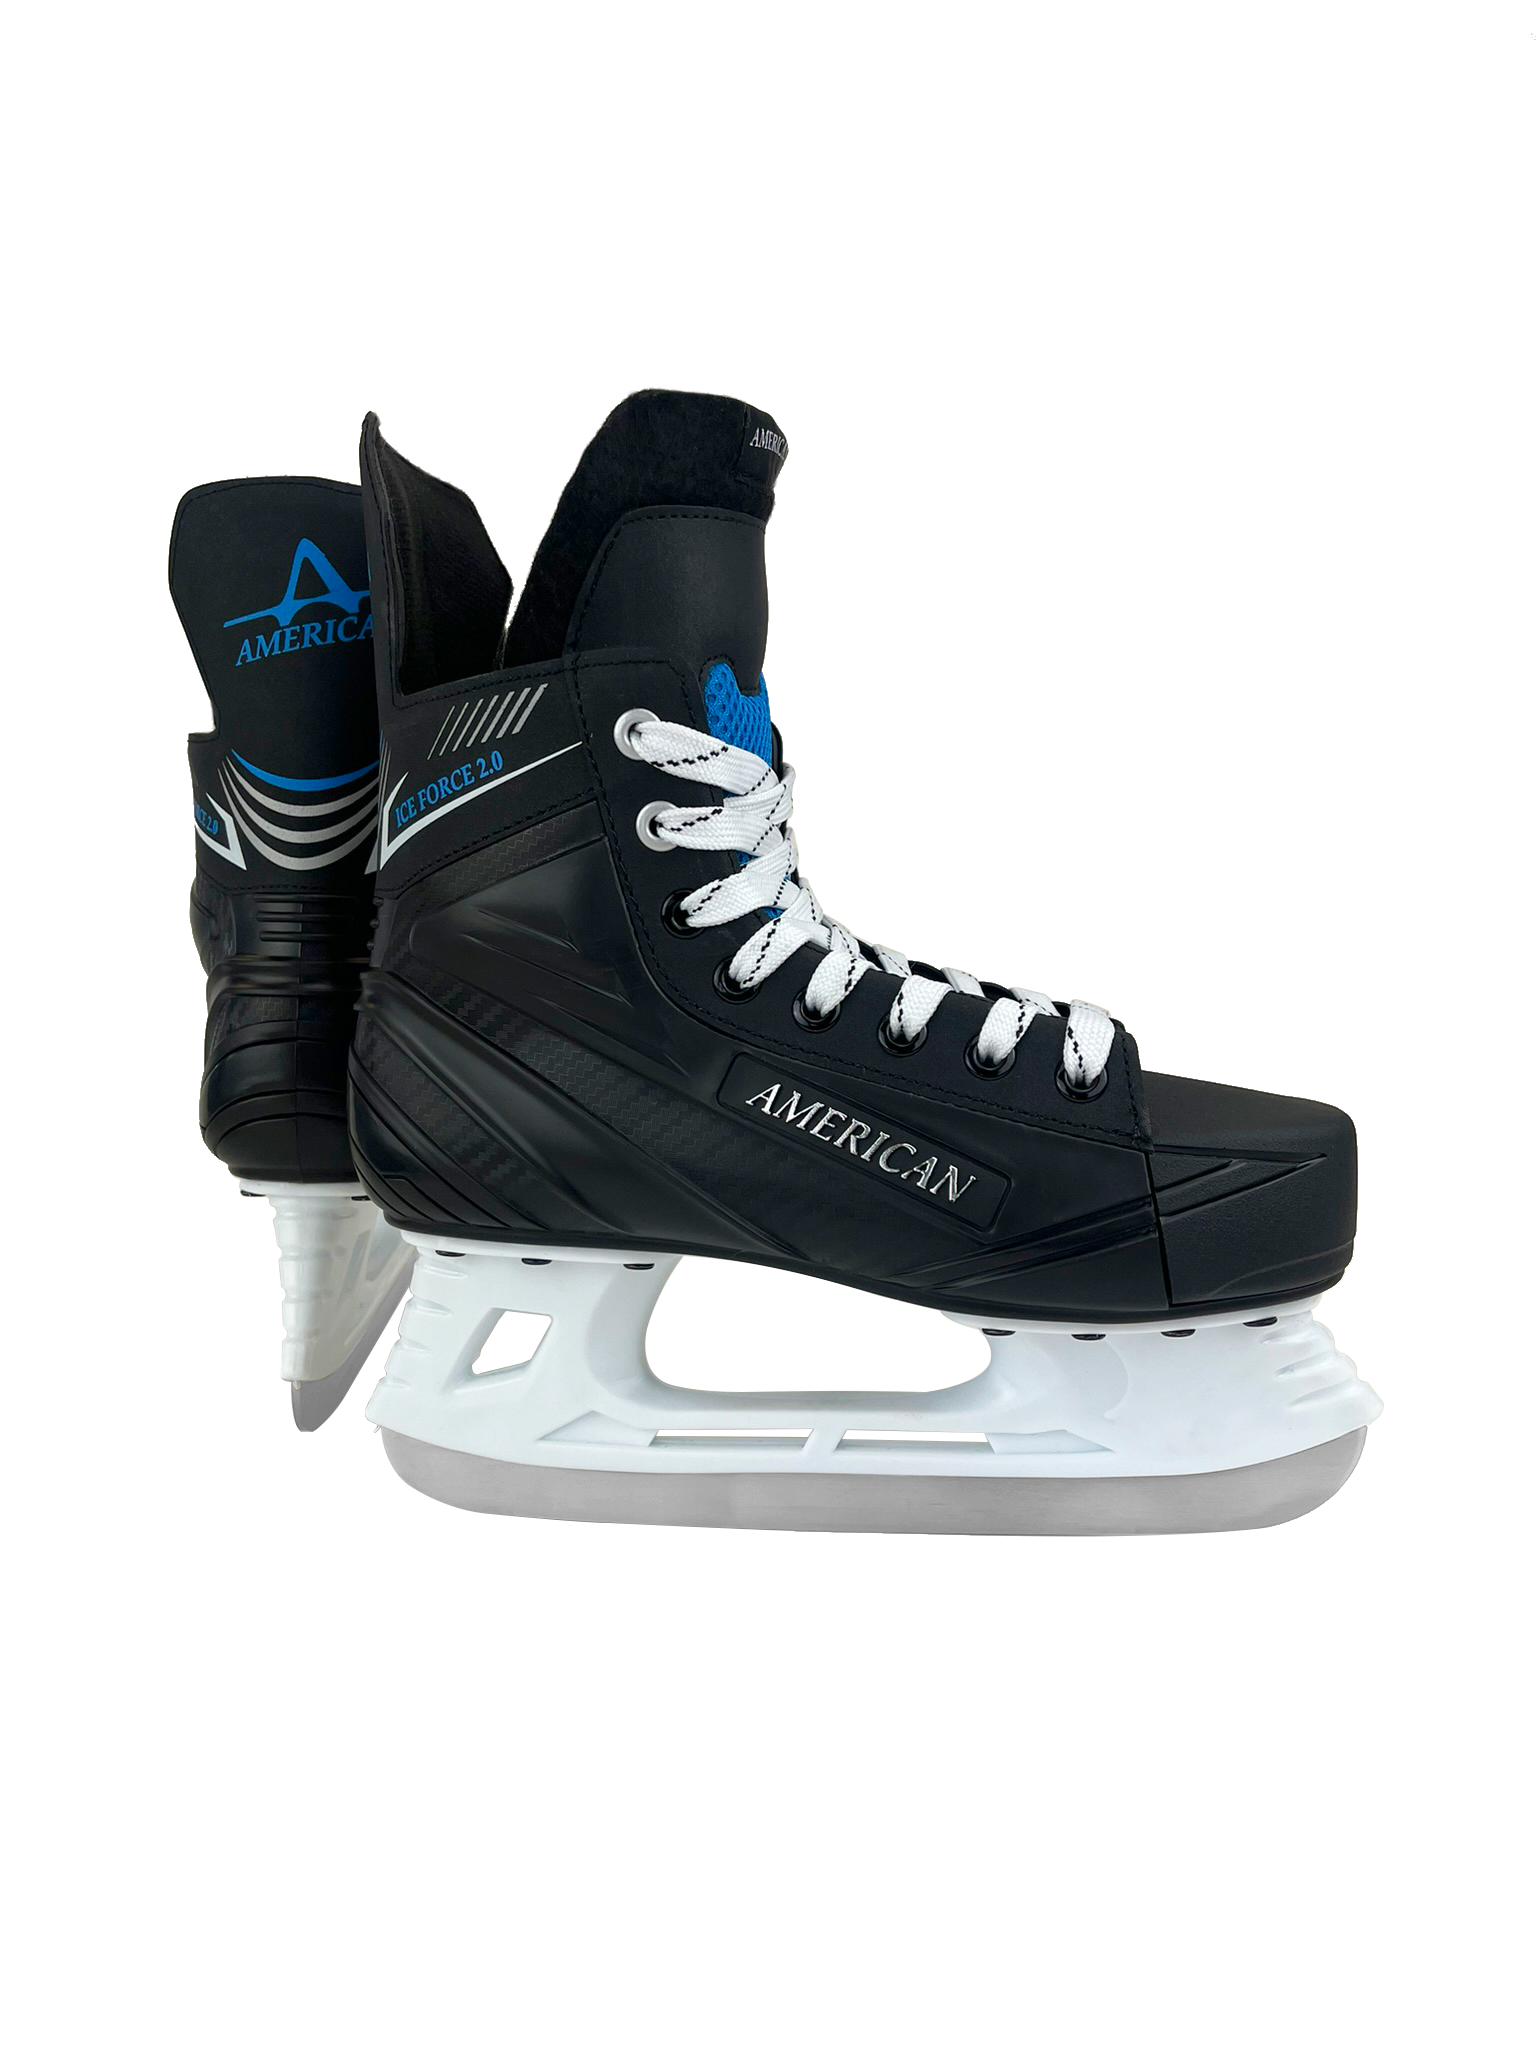 hockey ice skates